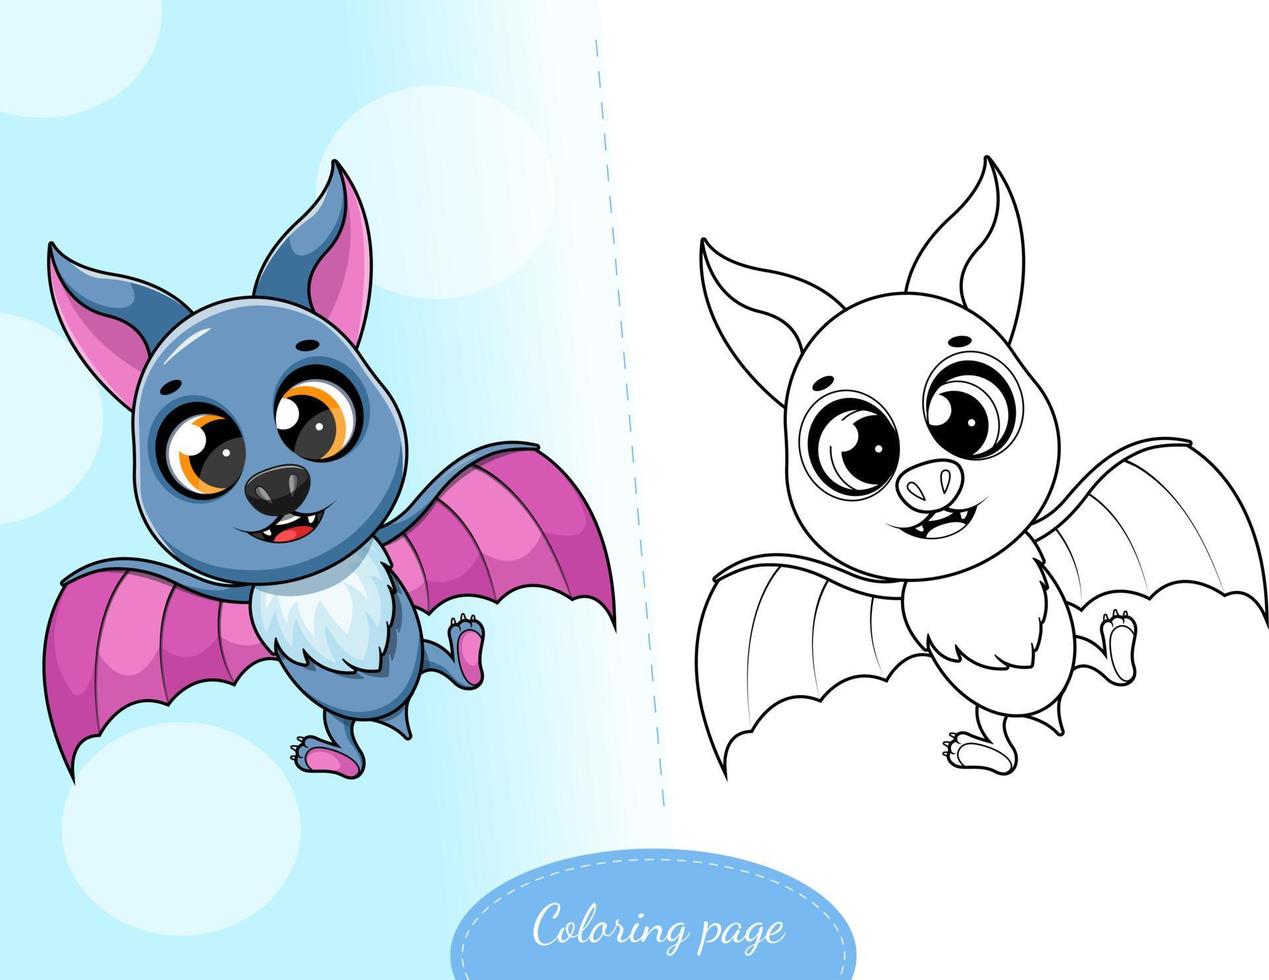 Desenhos para colorir de desenho de um monstro-morcego do halloween para  colorir 